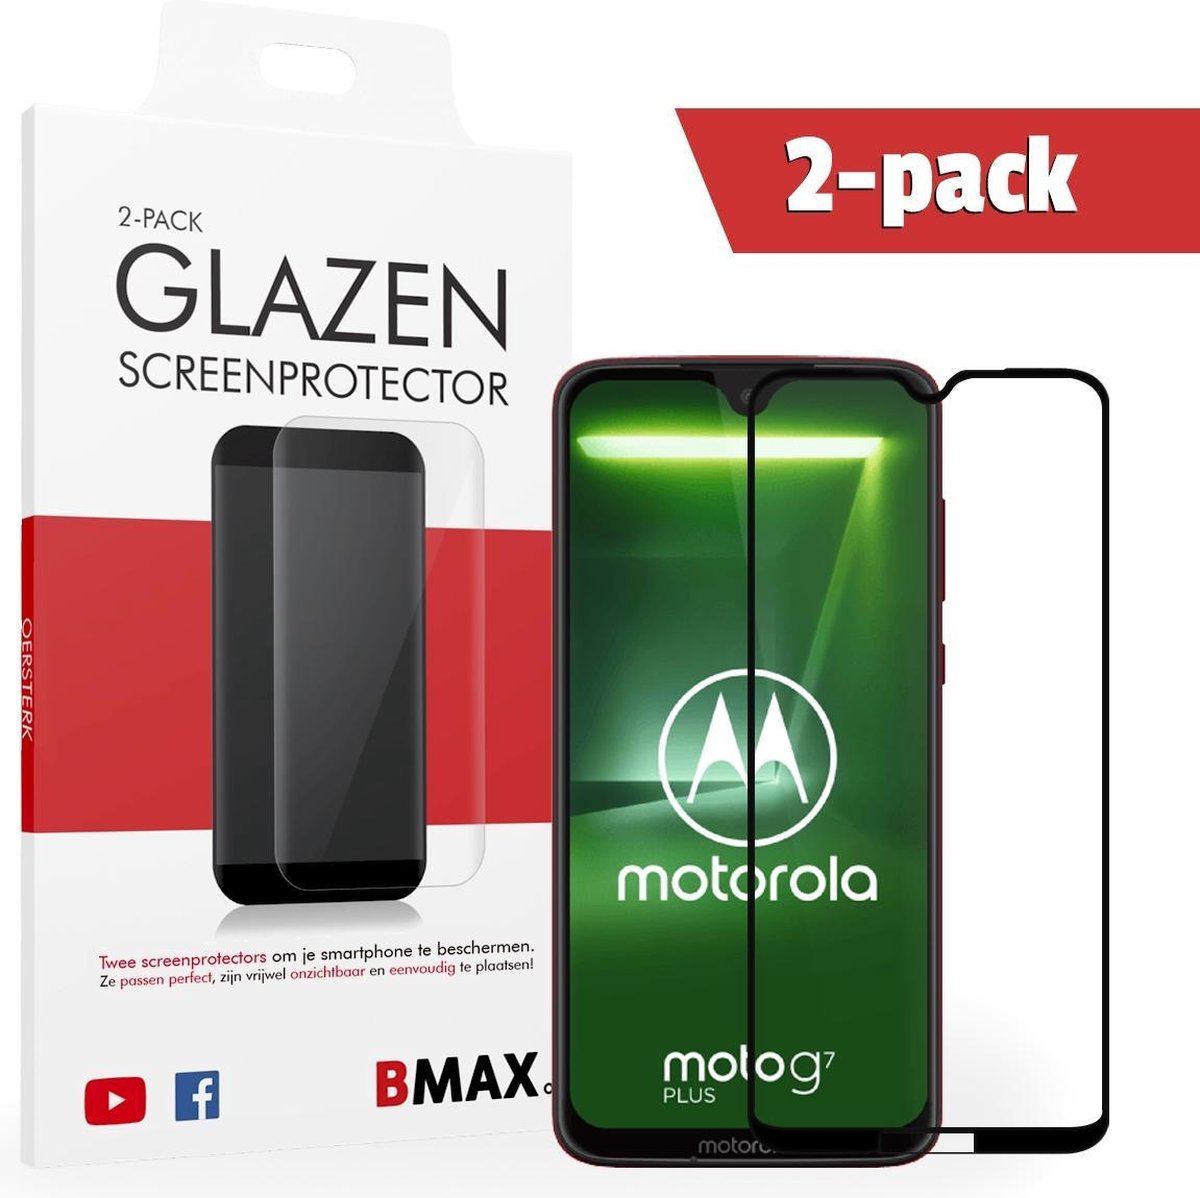 2-pack Bmax Motorola Moto G7 Plus Screenprotector - Glass - Full Cover 2.5d - Black